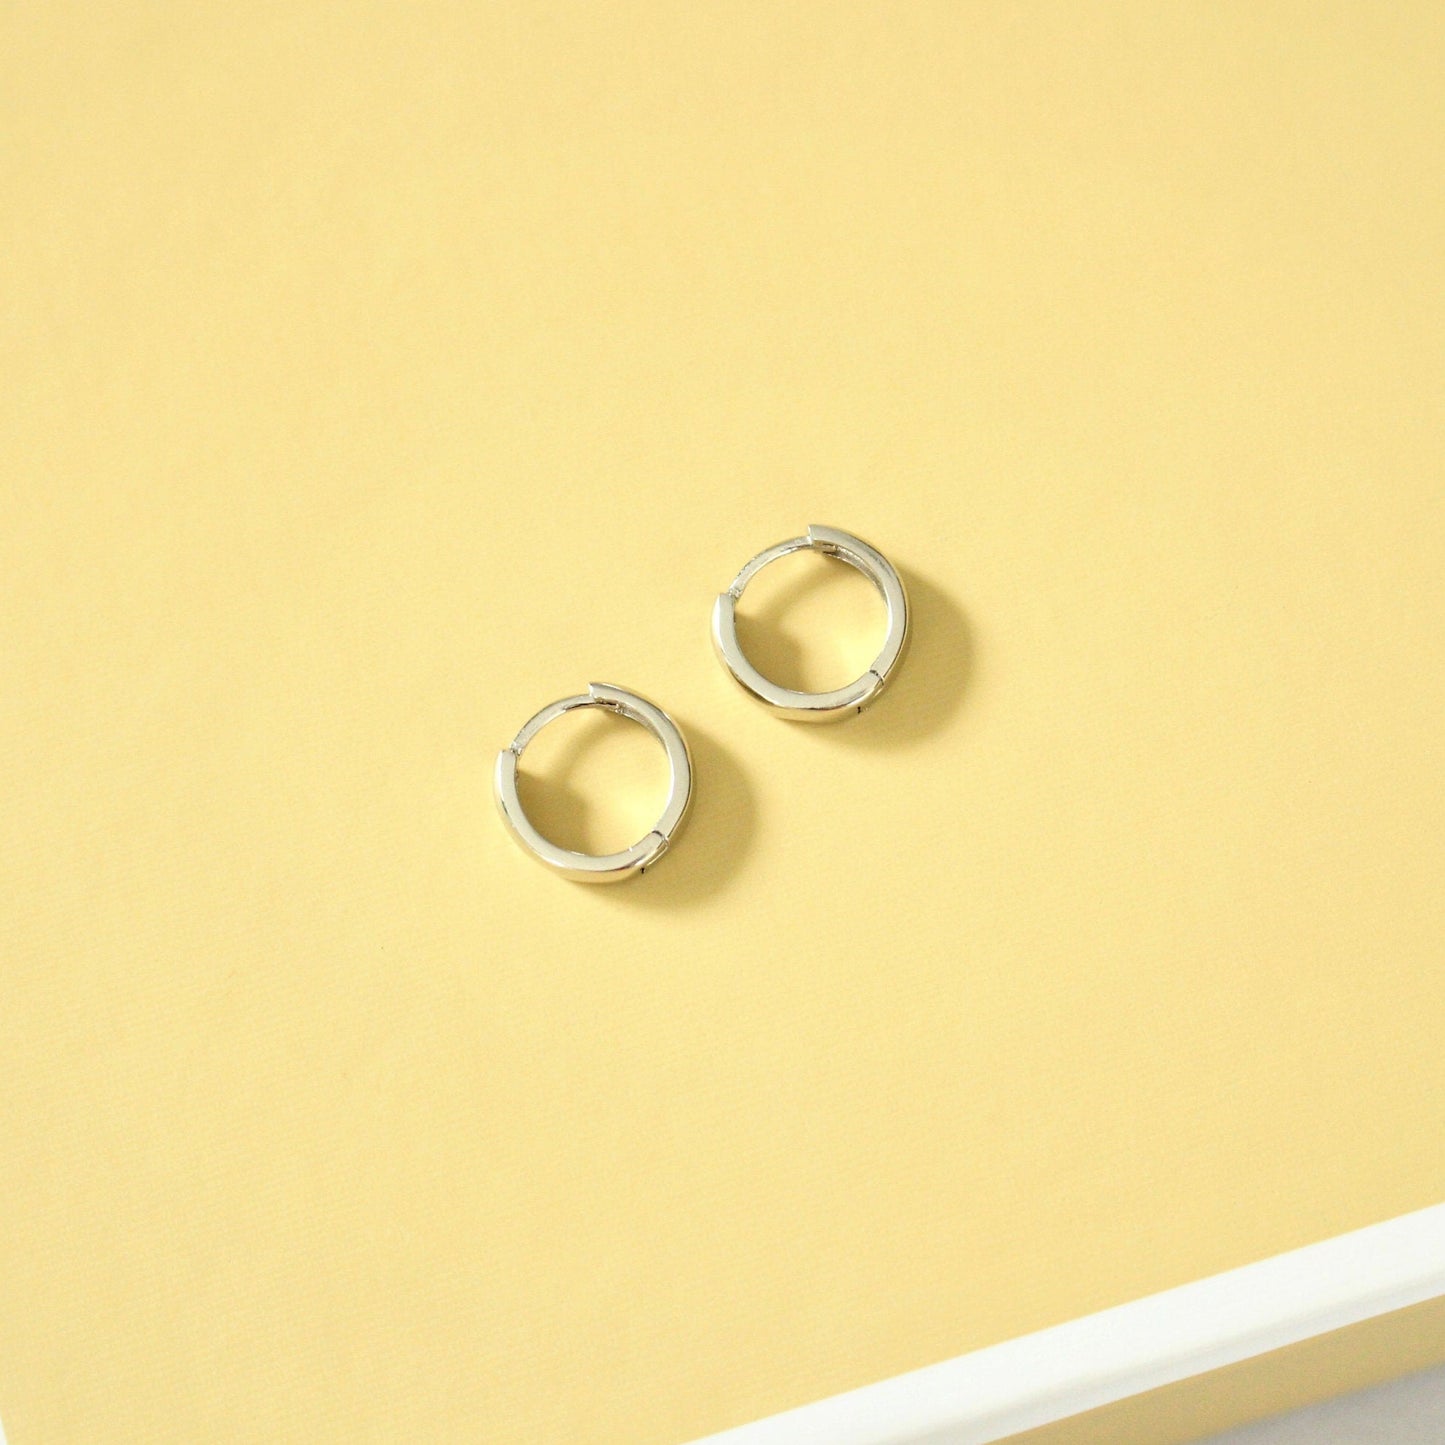 925 Minimalist sterling silver earrings | Huggies Silver hoops | 8.5 or 12 mm | 1 pair | Everyday Wear | Gift | Dainty earrings | tragus